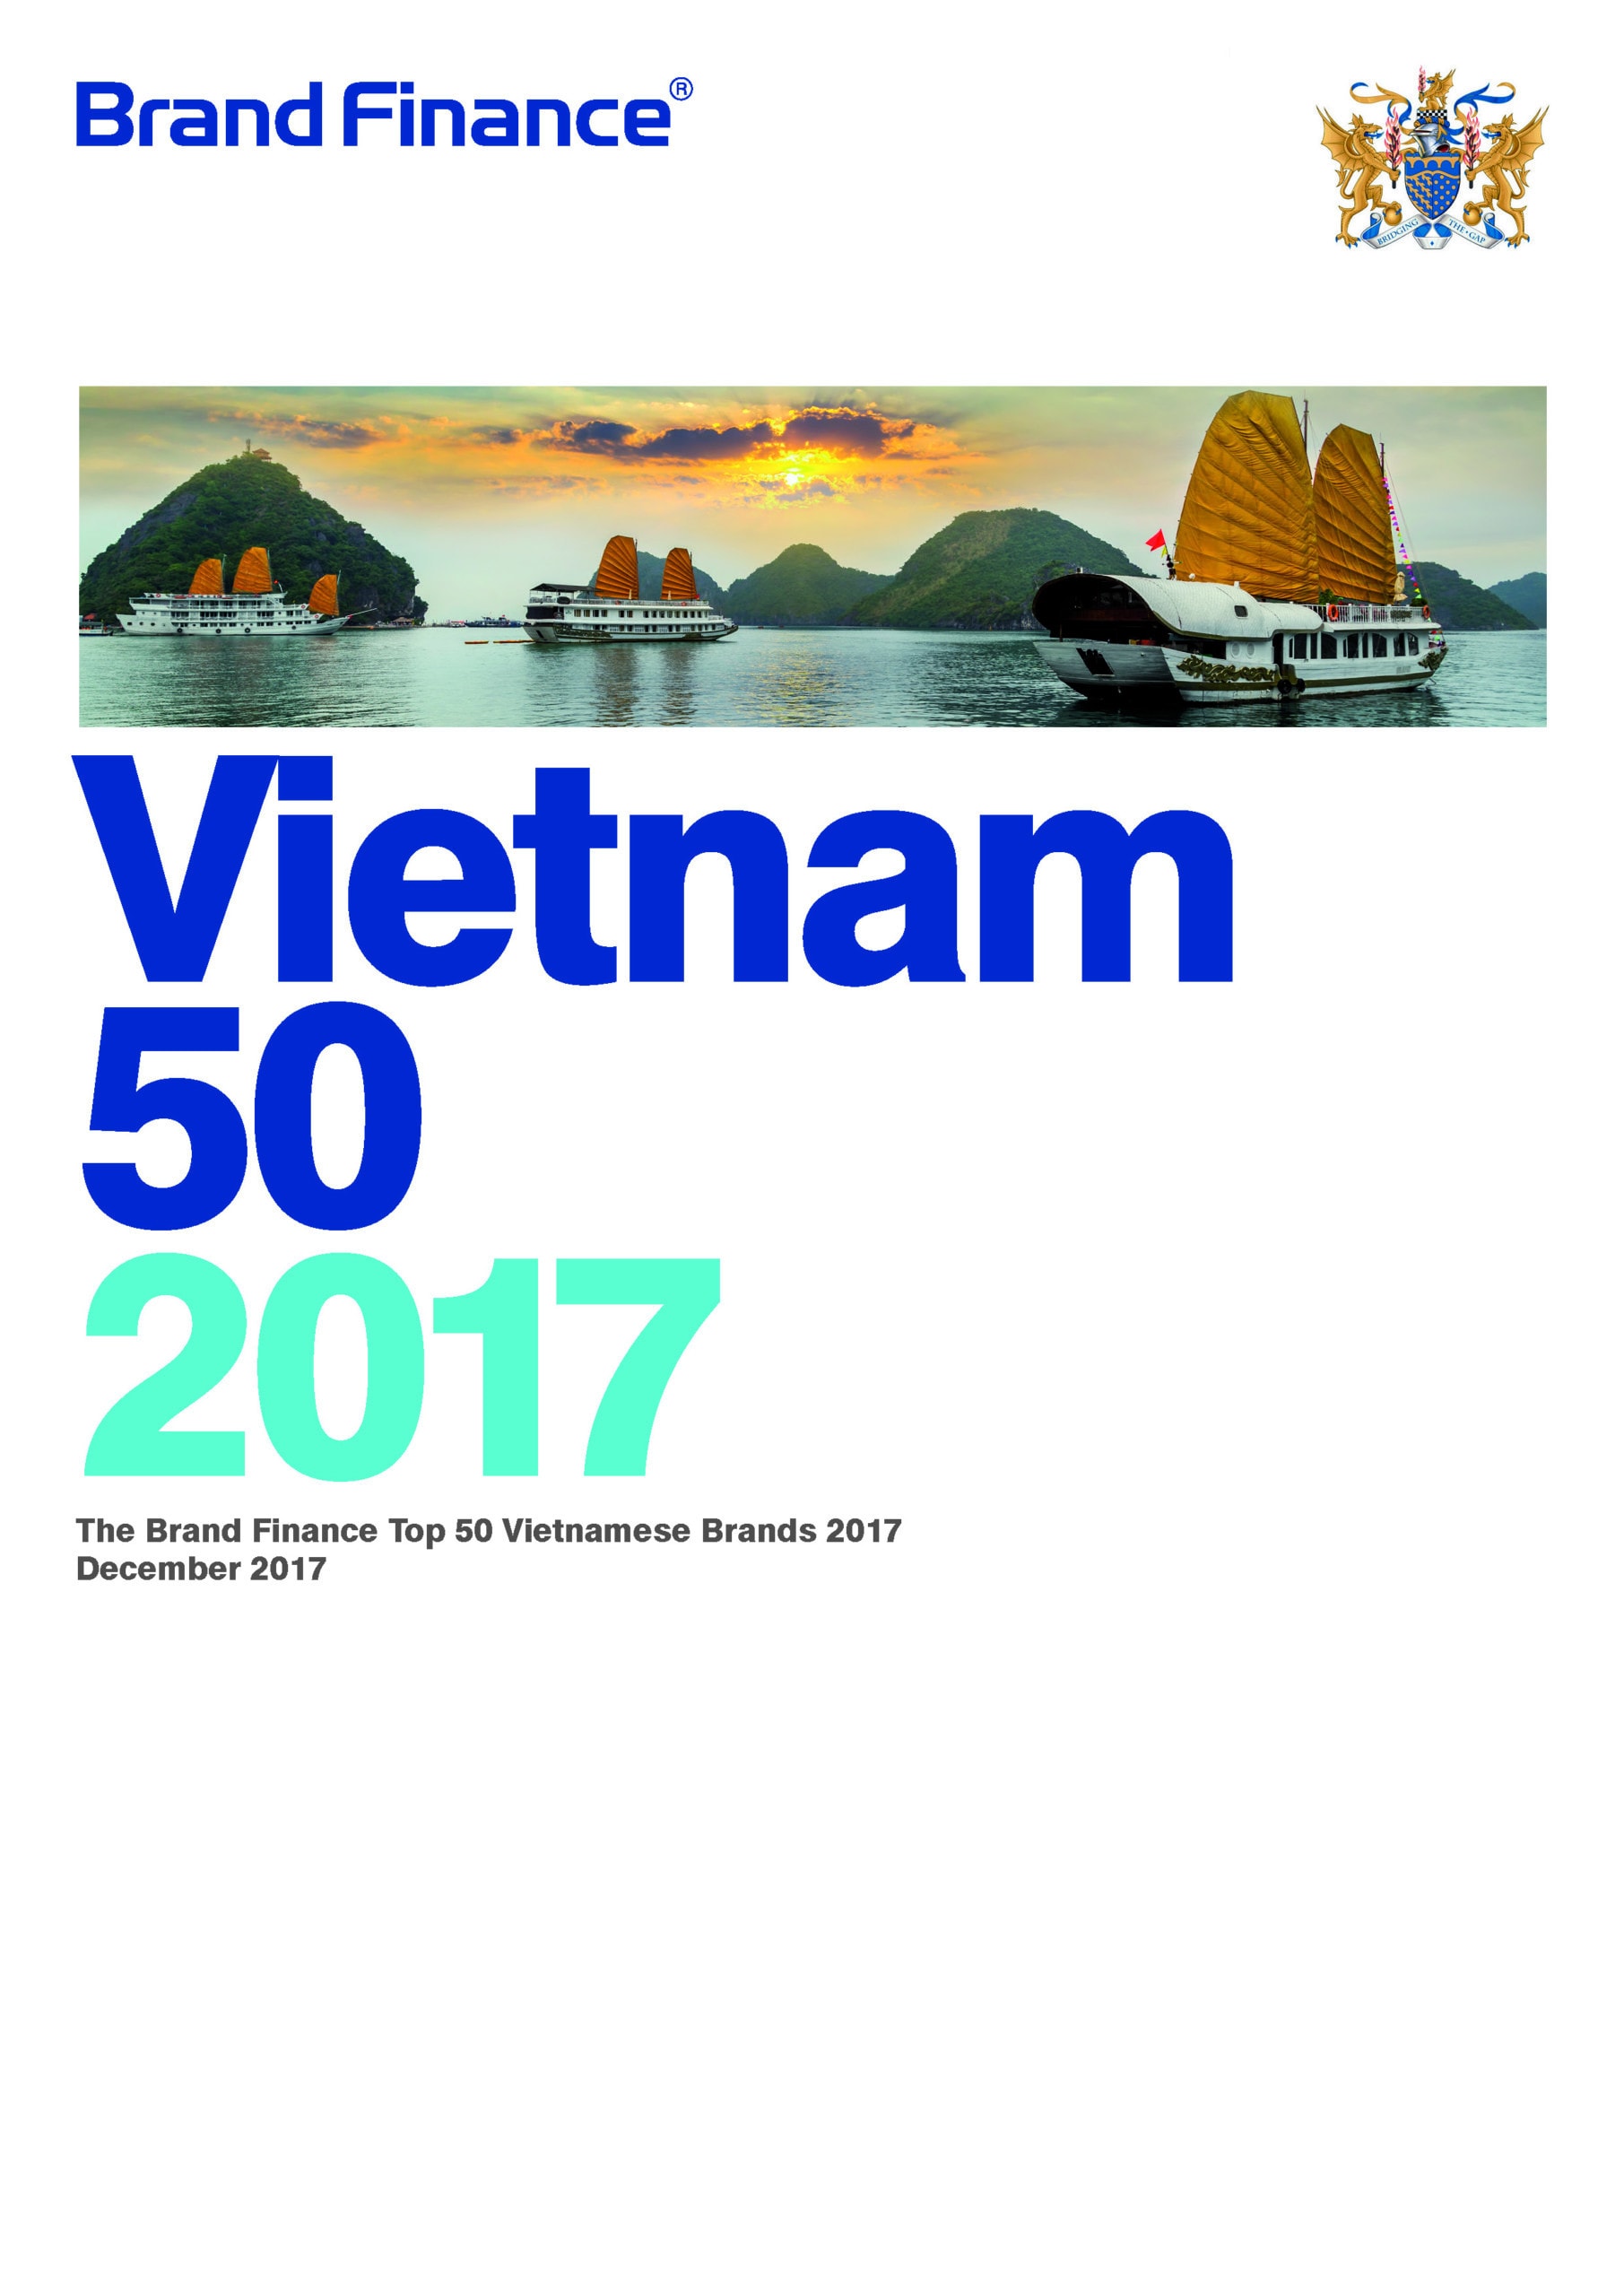 Brand Finance Vietnam 50 2017